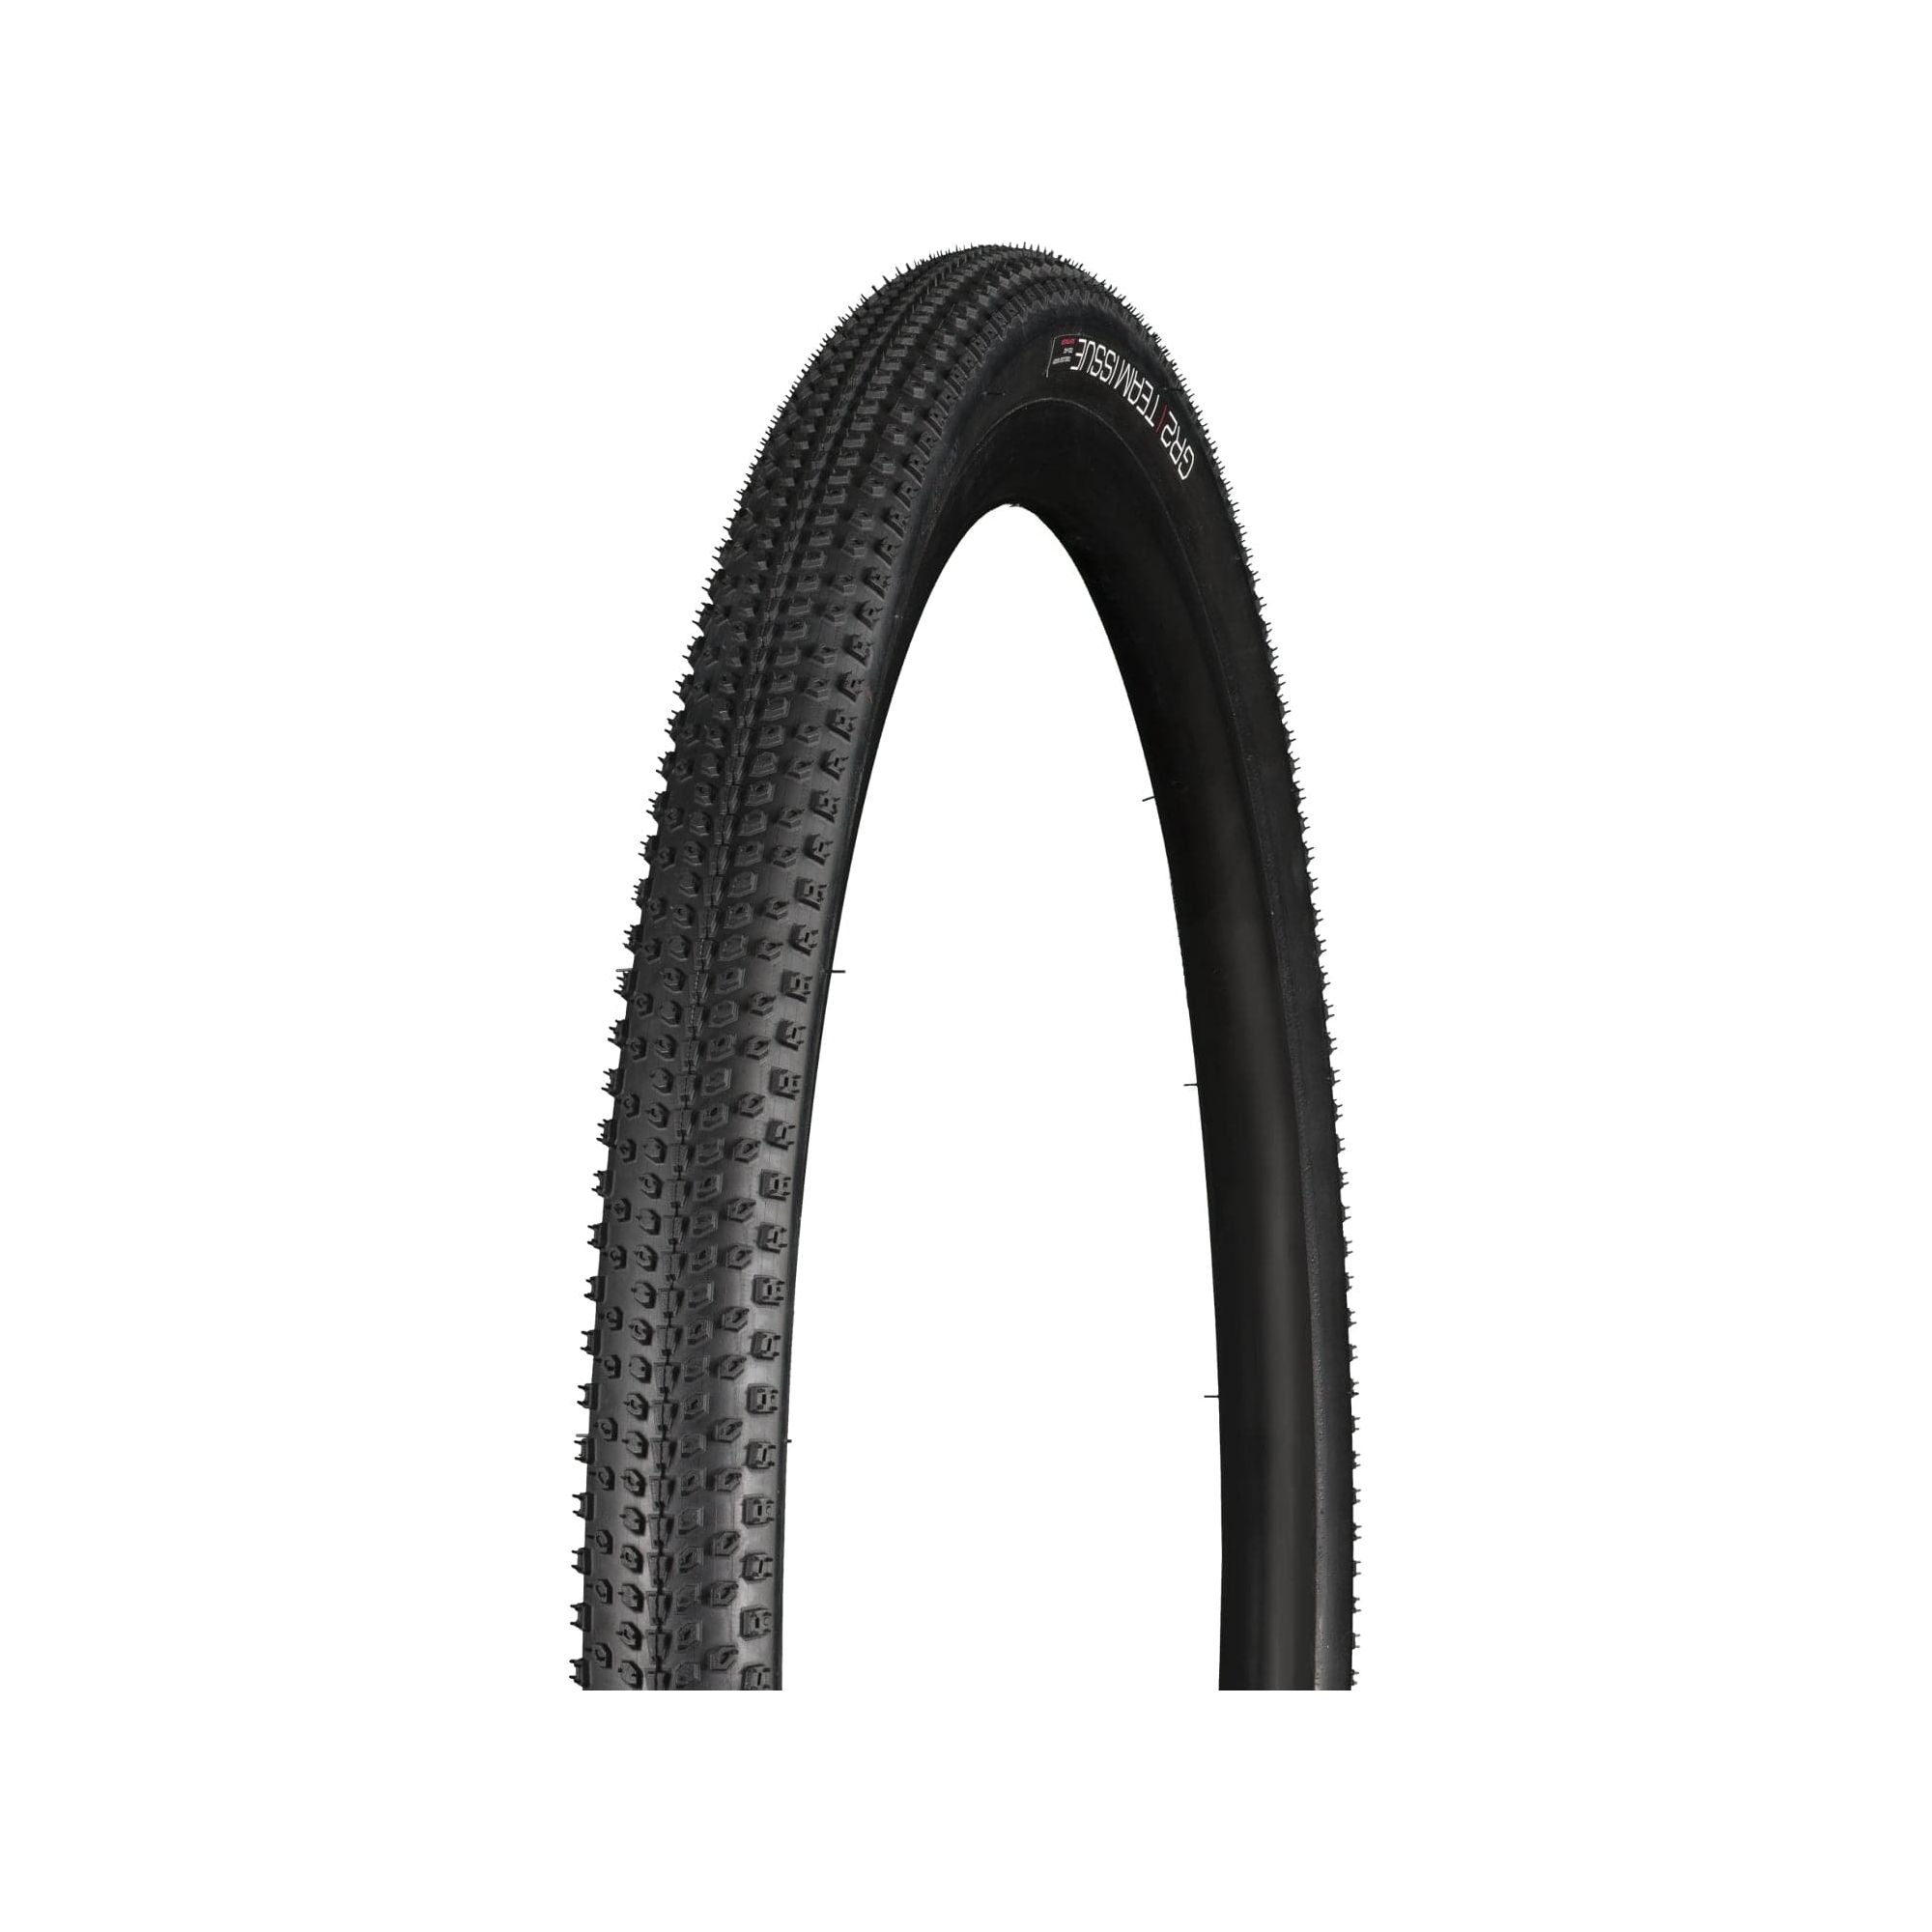 Bontrager GR2 Team Issue Gravel Tire